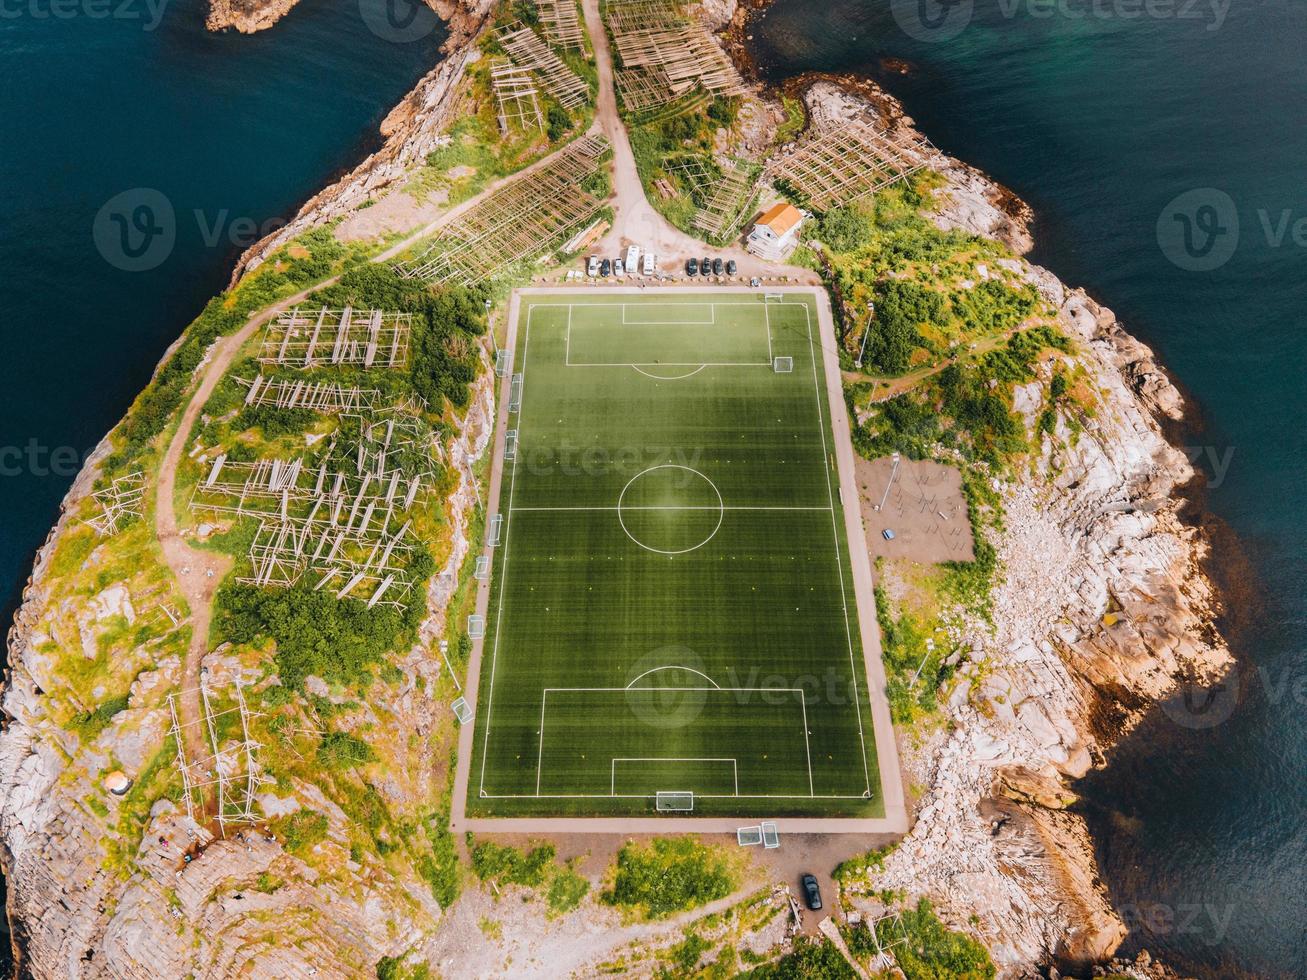 visualizzazioni di henningsvaer calcio stadio nel il lofoten isole nel Norvegia foto